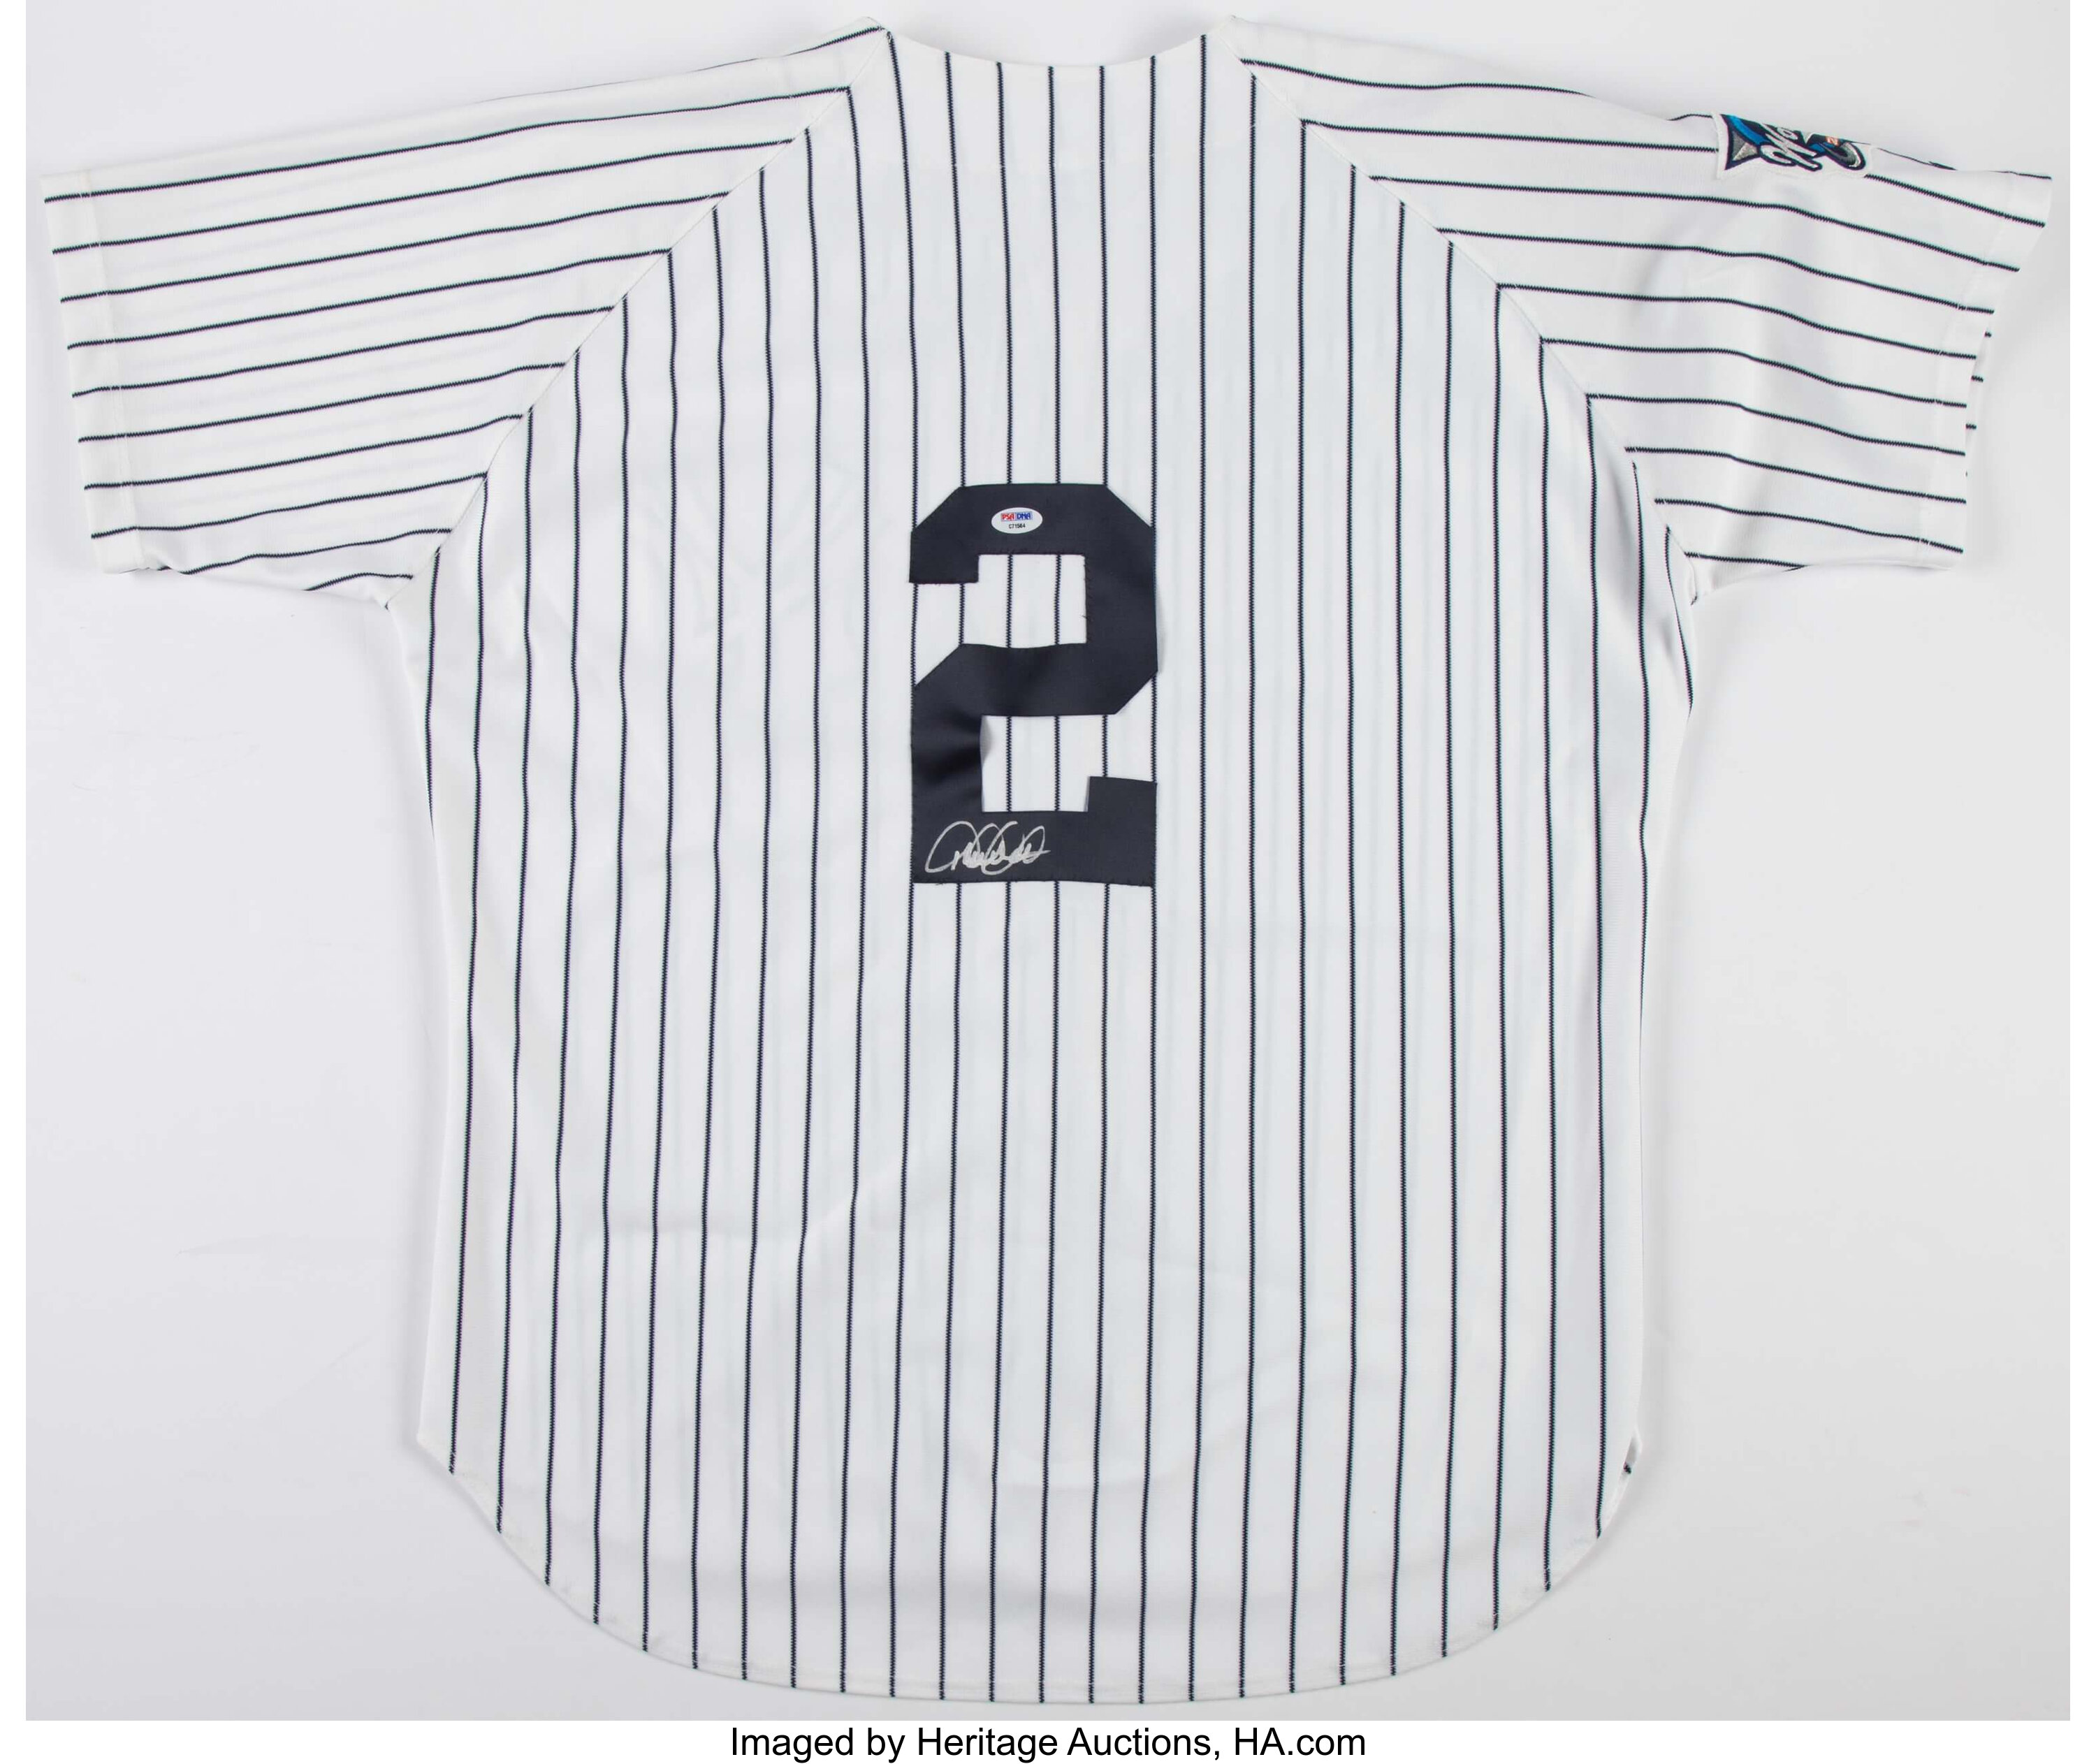 Derek Jeter Signed New York Yankees Jersey. Baseball, Lot #45090